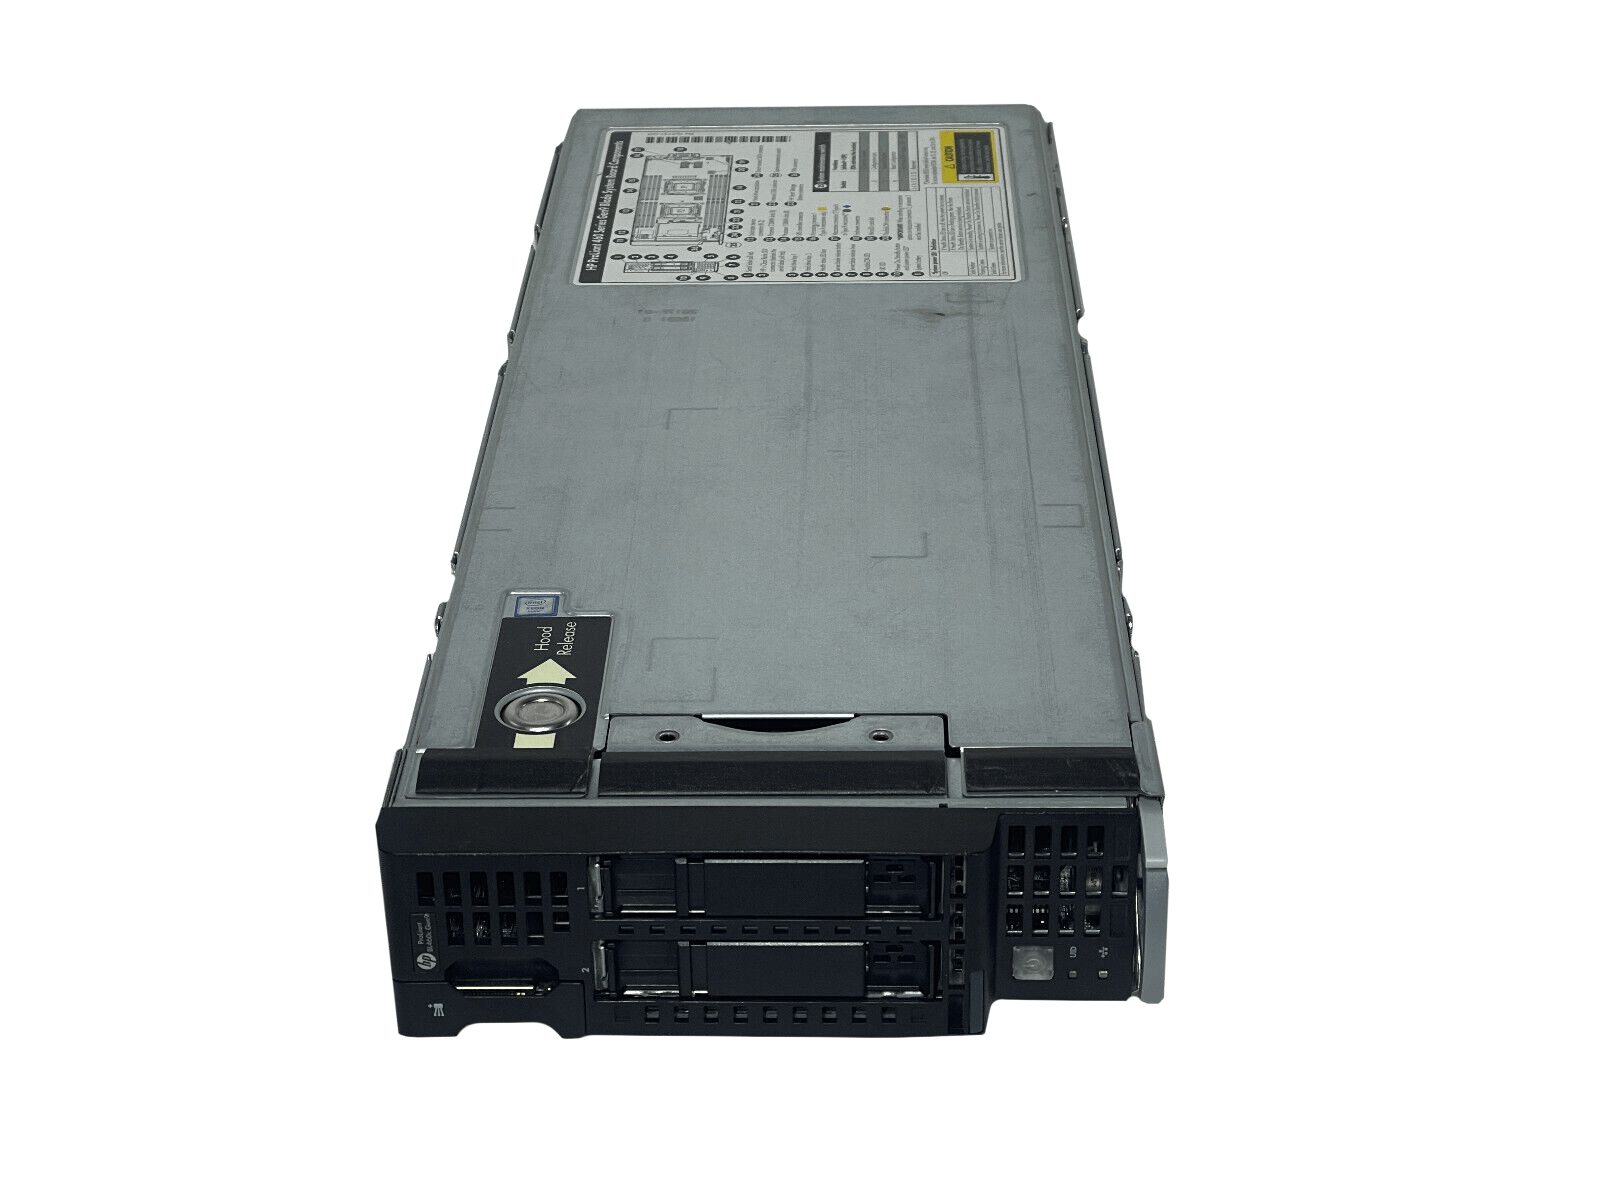 HPE BL460c Gen9 Blade Server 2SFF 2x 12C E5-2670 v3 512GB P244br 630FLB 10GbE.